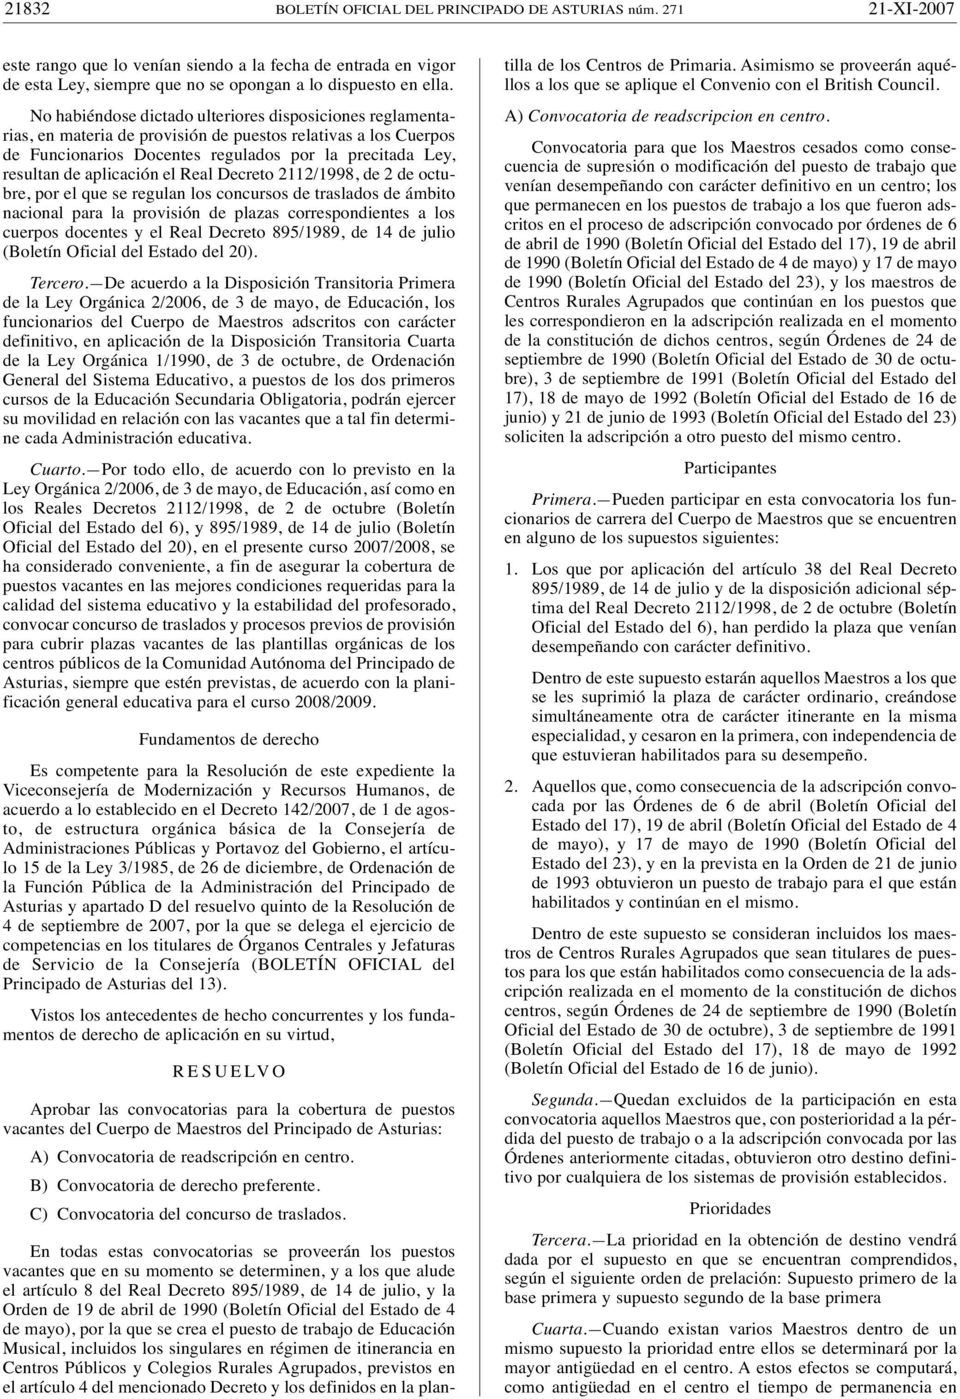 aplicación el Real Decreto 2112/1998, de 2 de octubre, por el que se regulan los concursos de traslados de ámbito nacional para la provisión de plazas correspondientes a los cuerpos docentes y el